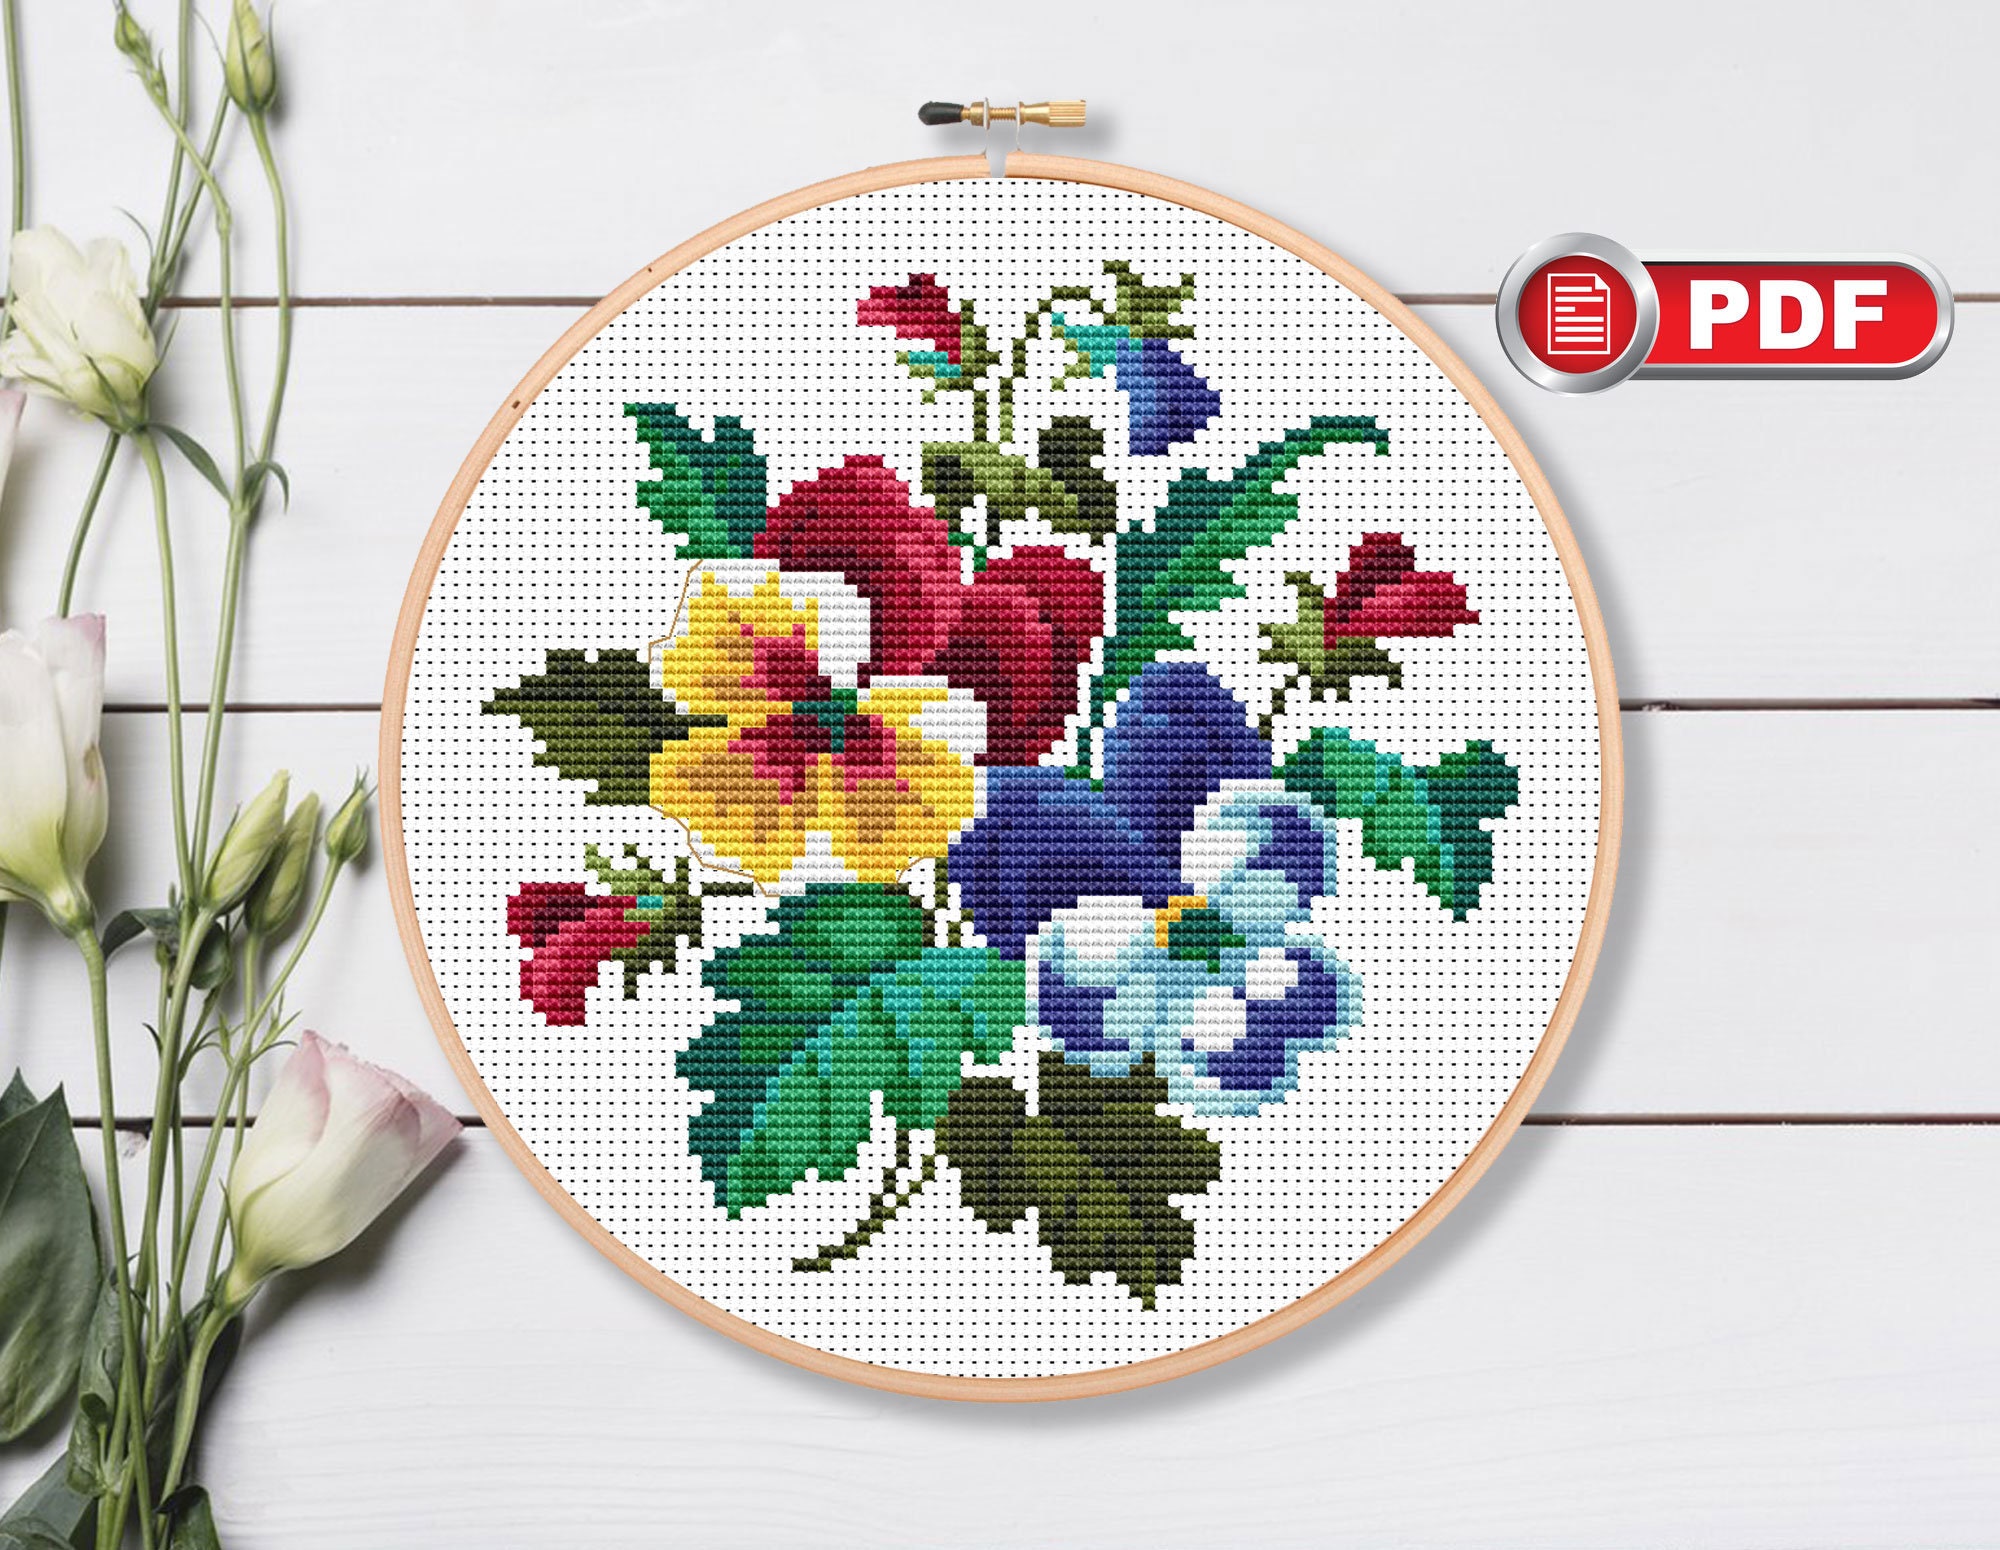 Tiny Hummingbird Kit Embroidery, Mini Stitch Kit, Small Embroidery Hoop,  Tiny Bird Cross Stitch, Hummingbird Needlepoint Kit, Small Bird 